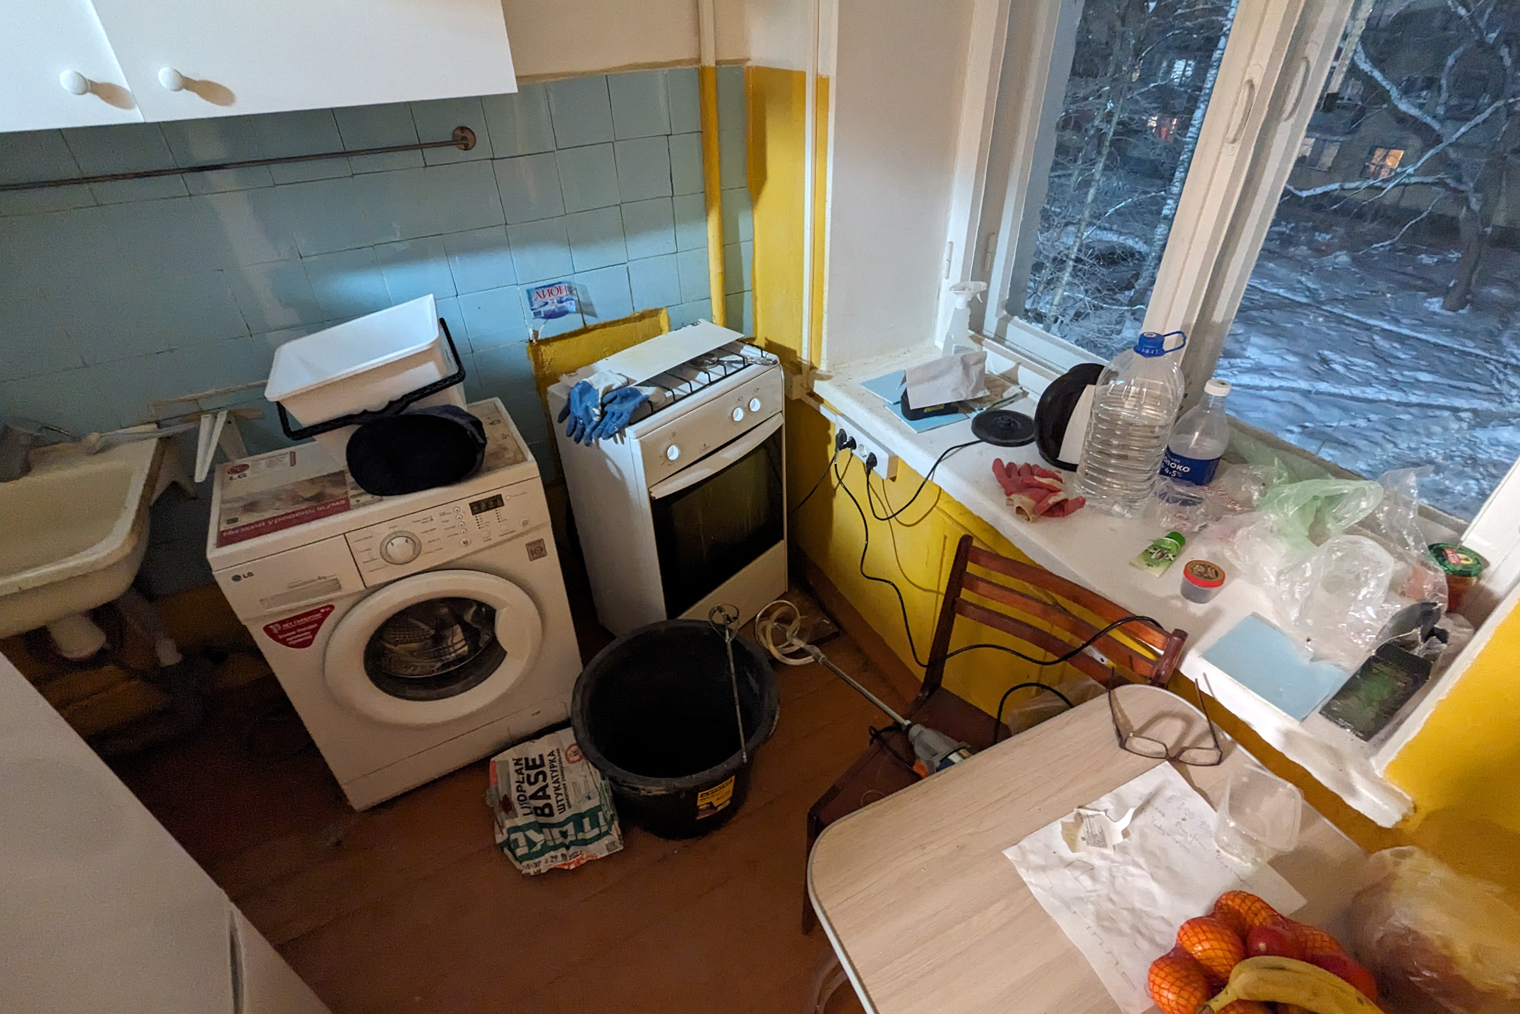 Так выглядела кухня до ремонта. Не хватает только рабочей поверхности над стиральной машиной. Ее вывезли вместе с мусором